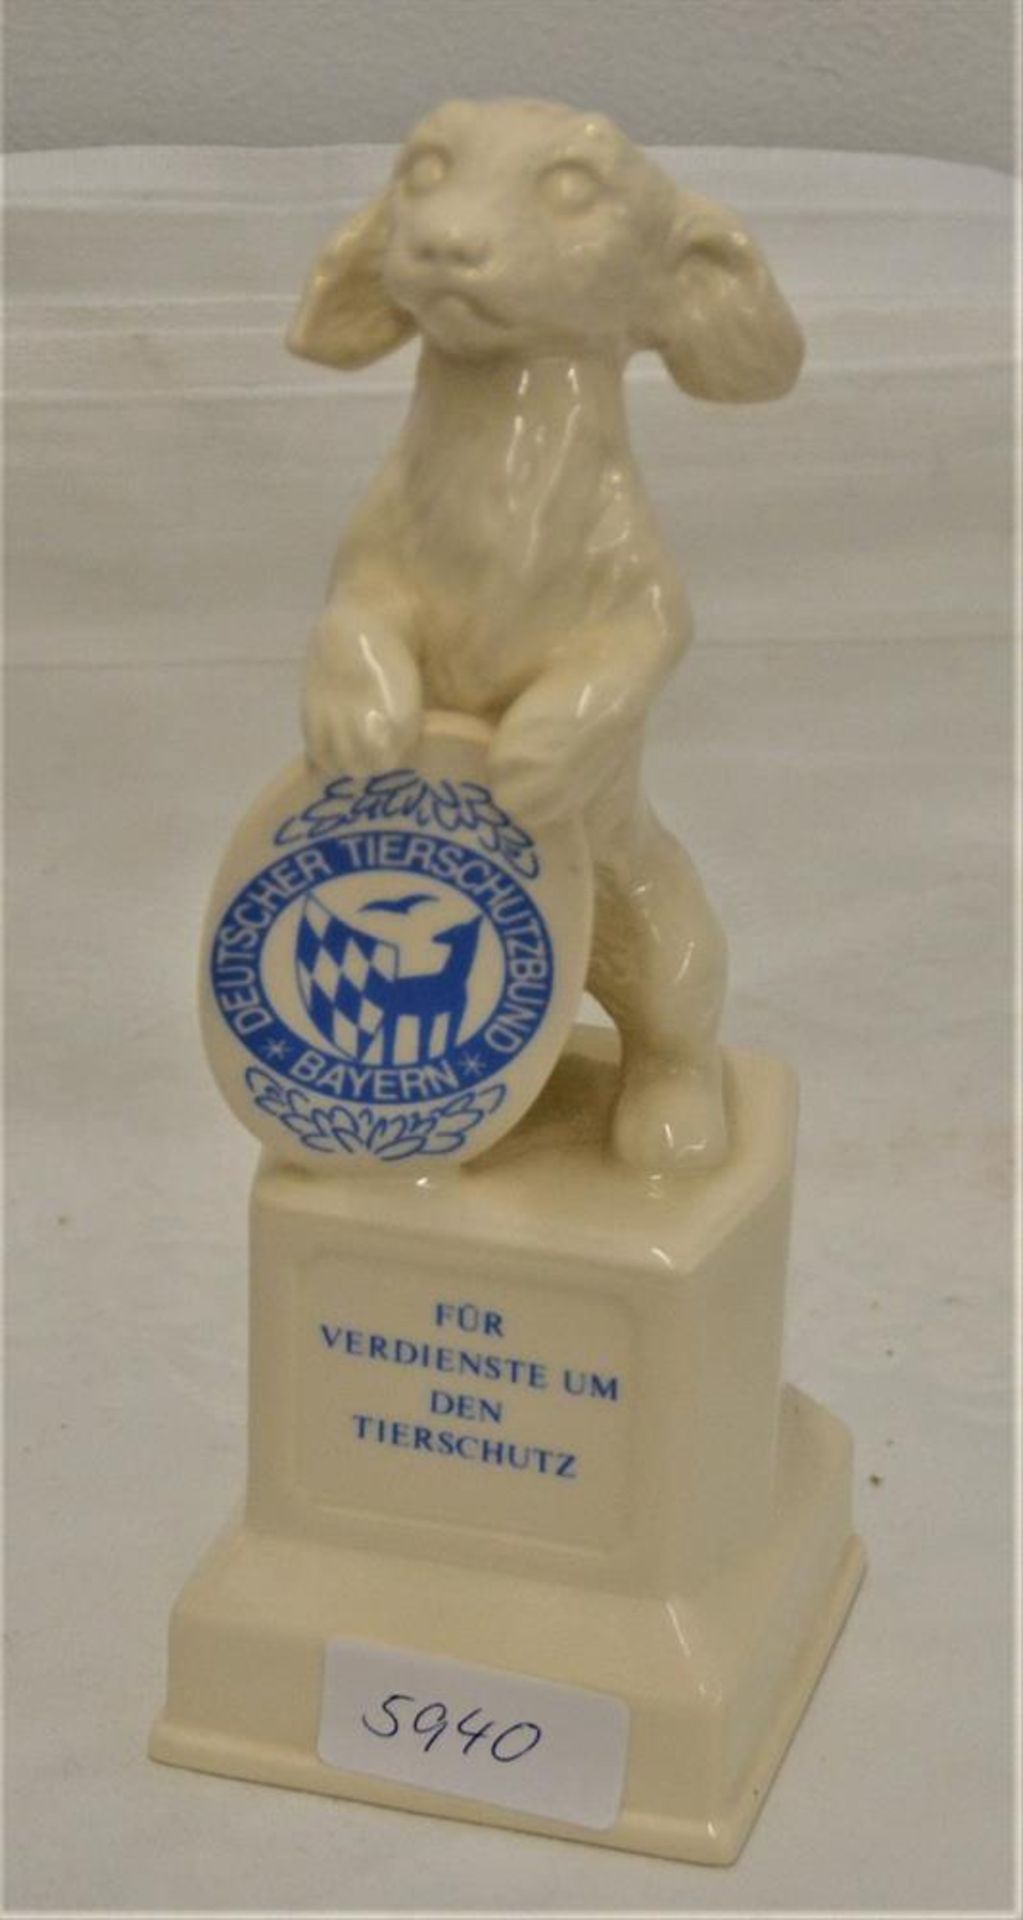 Goebel Porzellanfigur "Für Verdienste um den Tierschutz" selten, 20 cm<